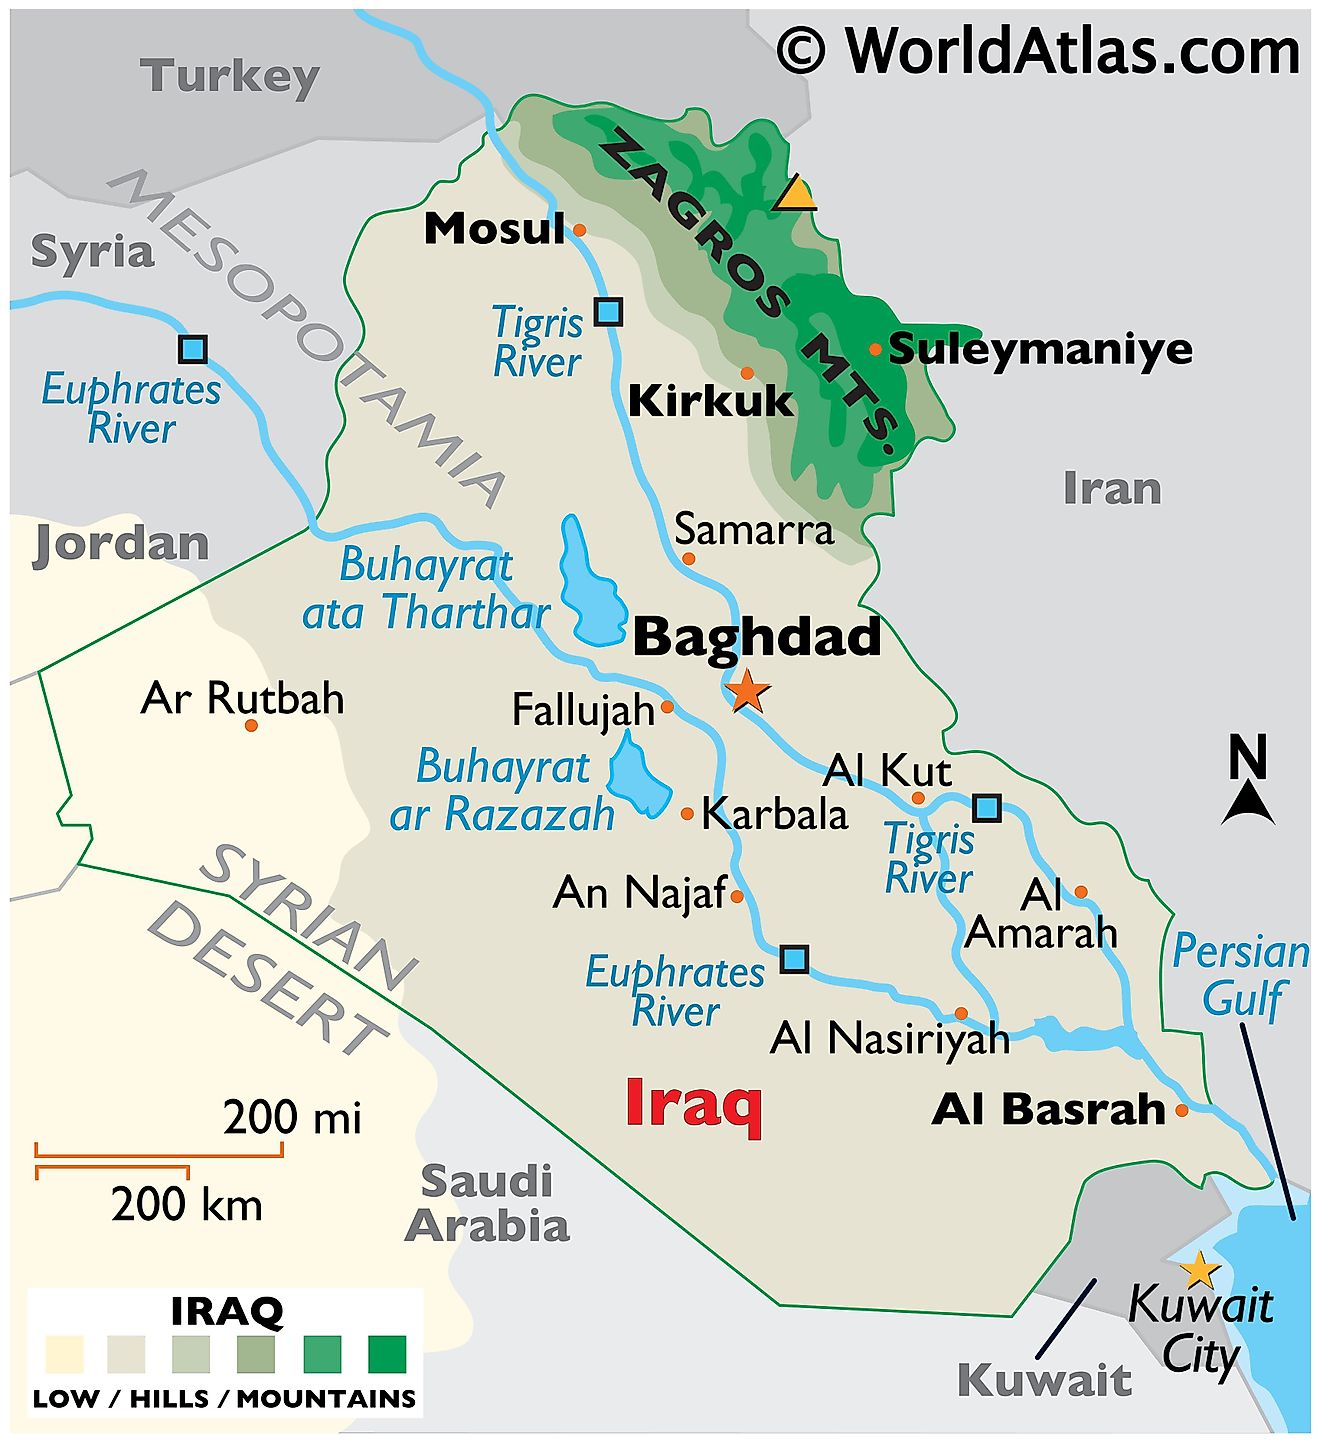 Mapa físico de Irak que muestra los límites estatales, el relieve, las montañas Zagros, los ríos principales, el punto más alto, los lagos principales, las ciudades importantes y más.